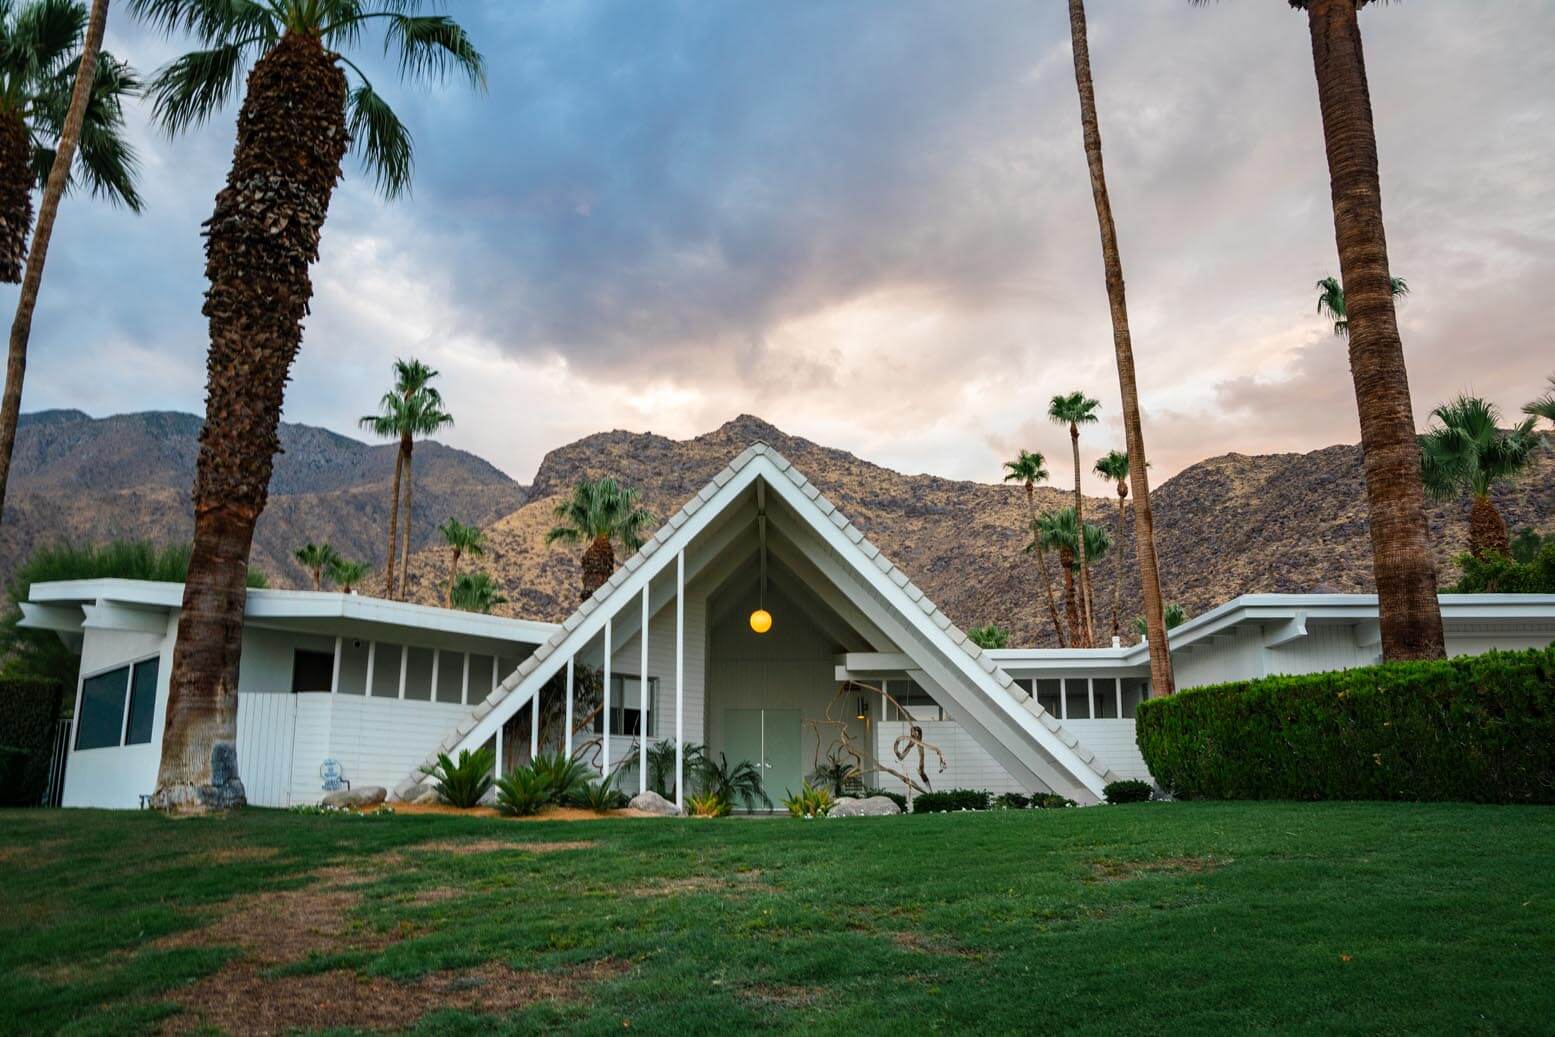 Marilyn Monroe Estate in Palm Springs, CA